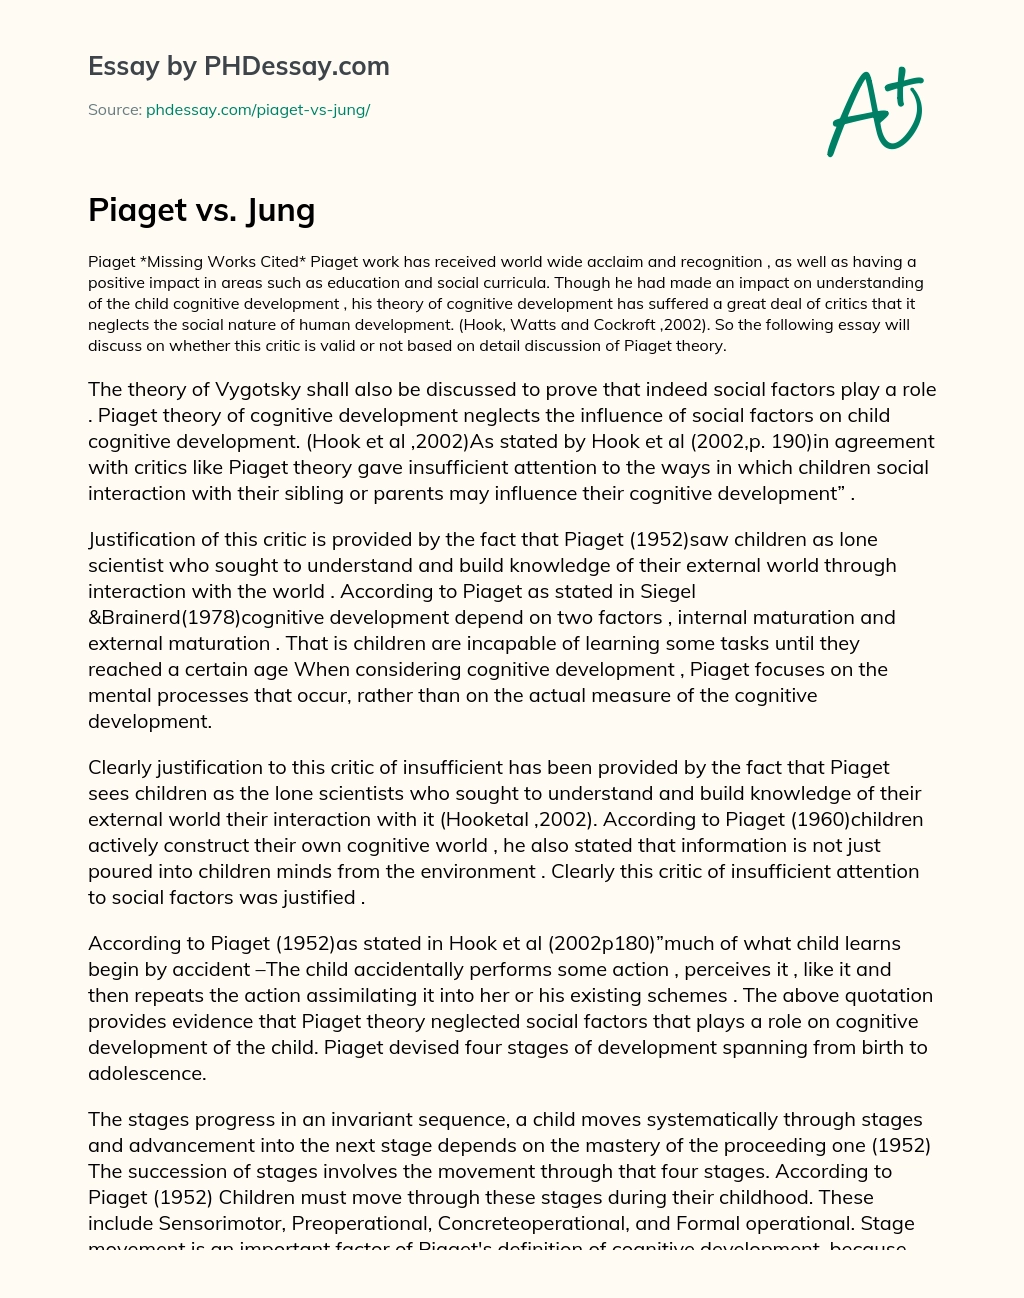 Piaget vs. Jung essay